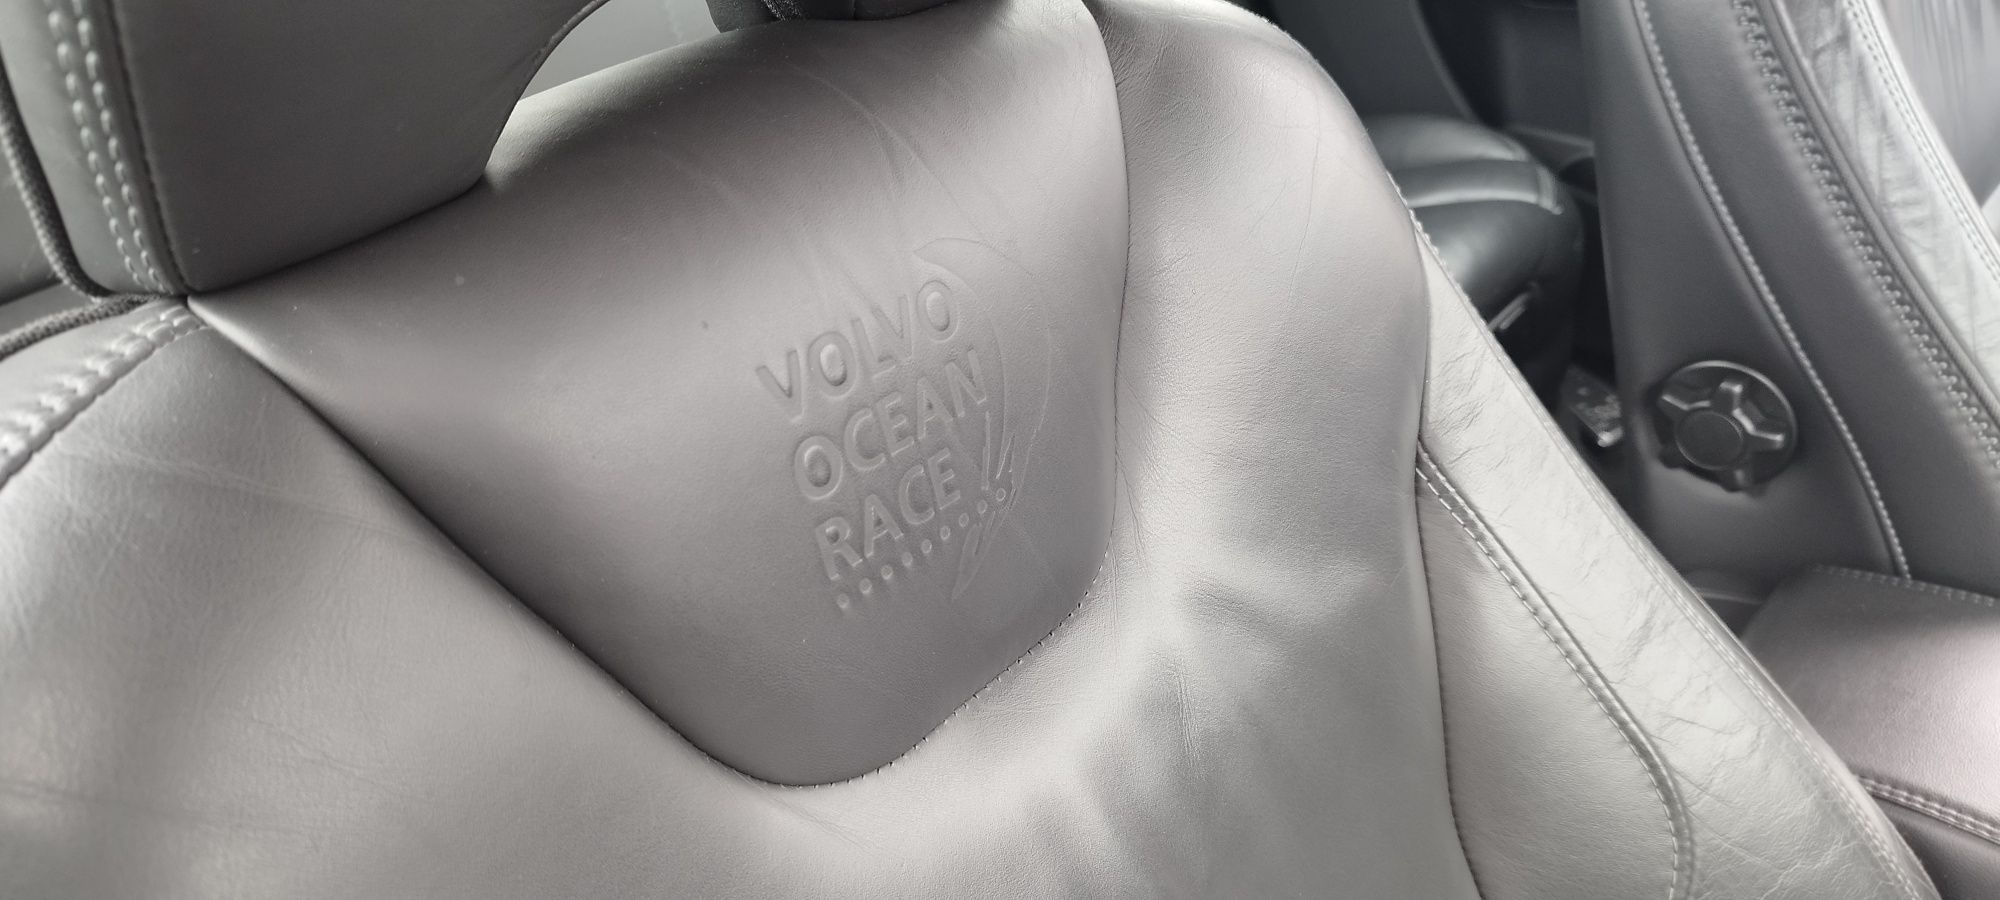 Volvo XC 60 2.0D OCEAN RACE